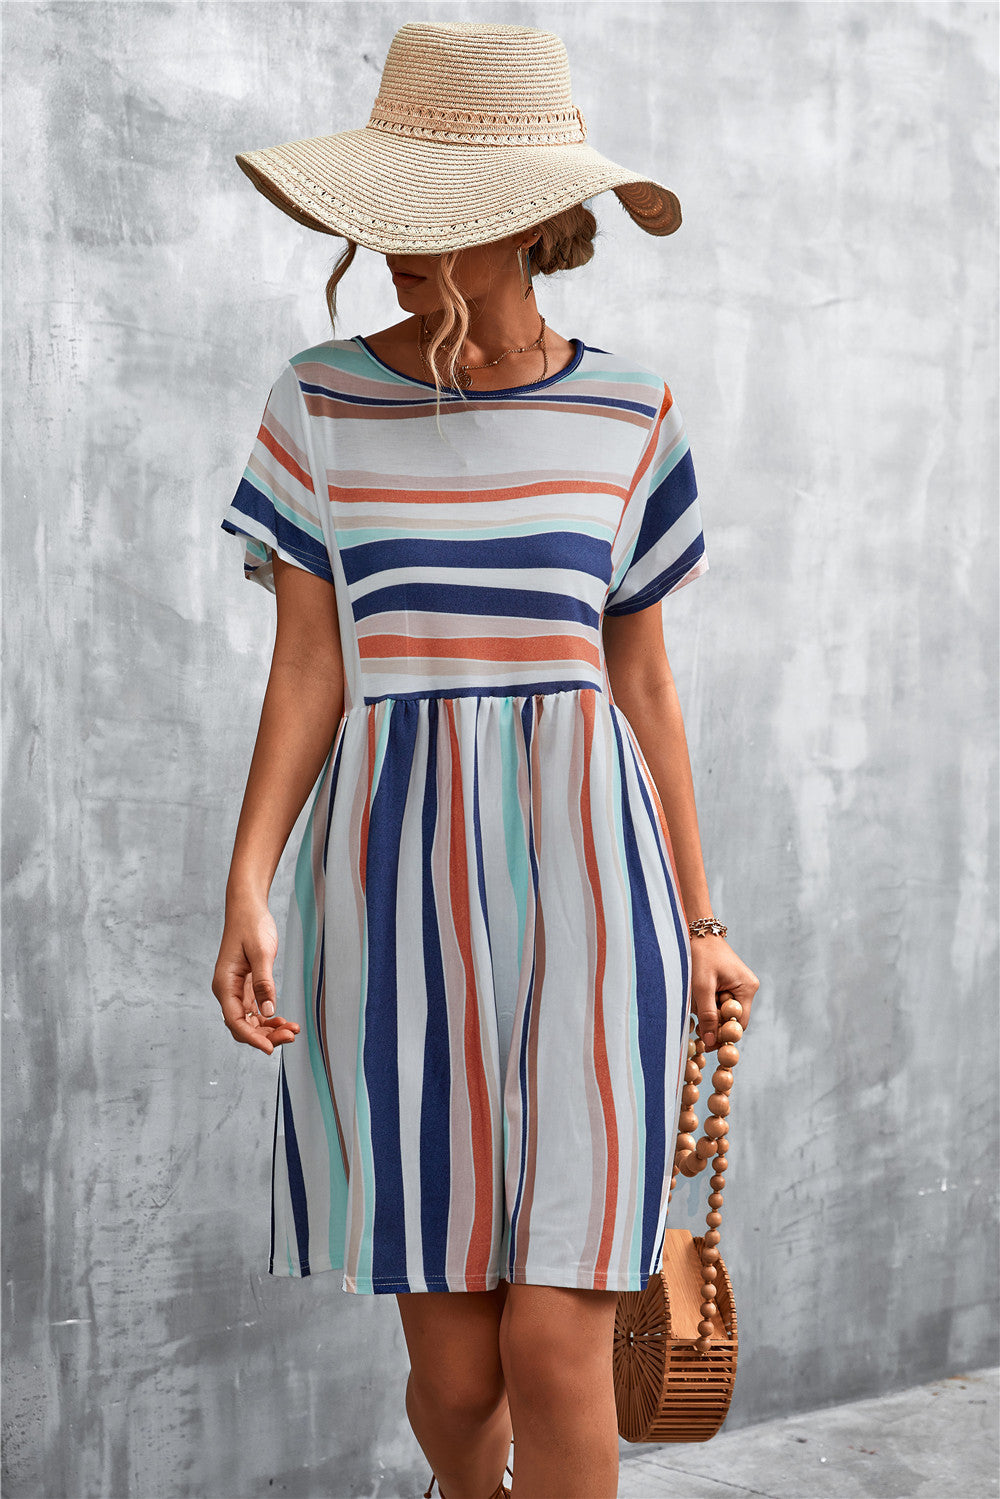 Stylish Women's Classic Striped Printed Dress Skirts